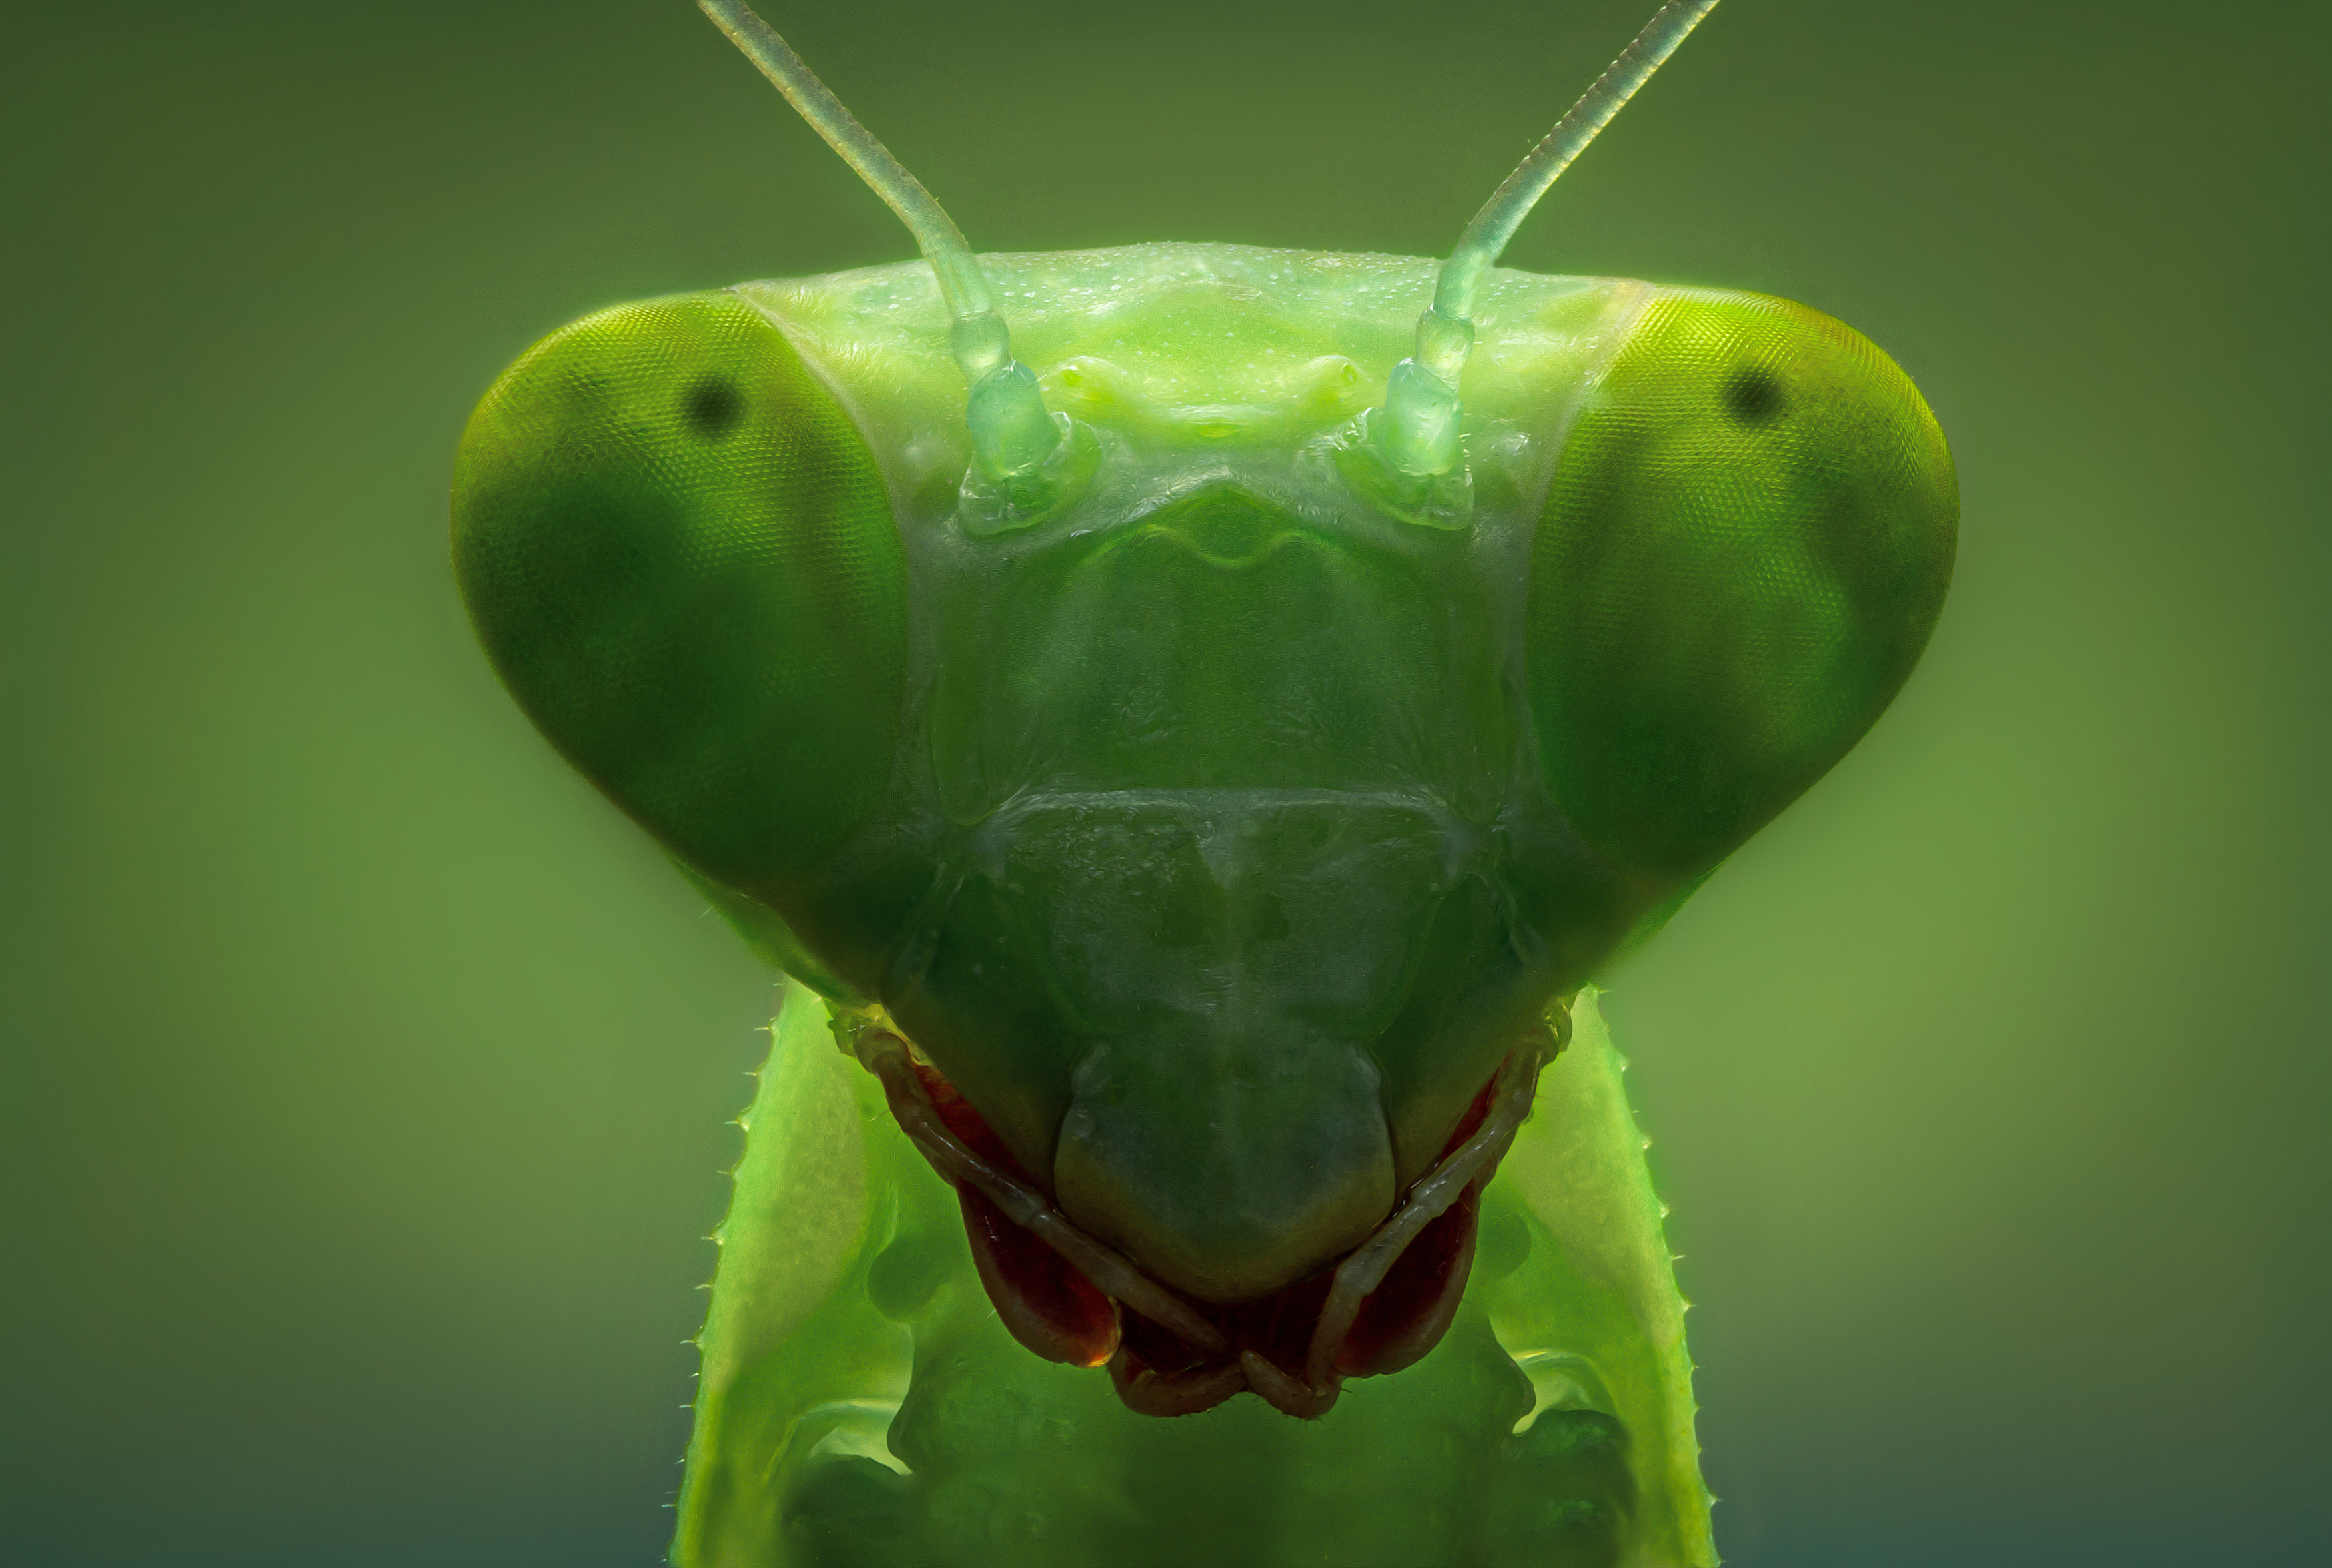 зелёный богомол насекомое цвет свет фон боке портрет макро фото природа, Еремеев Дмитрий